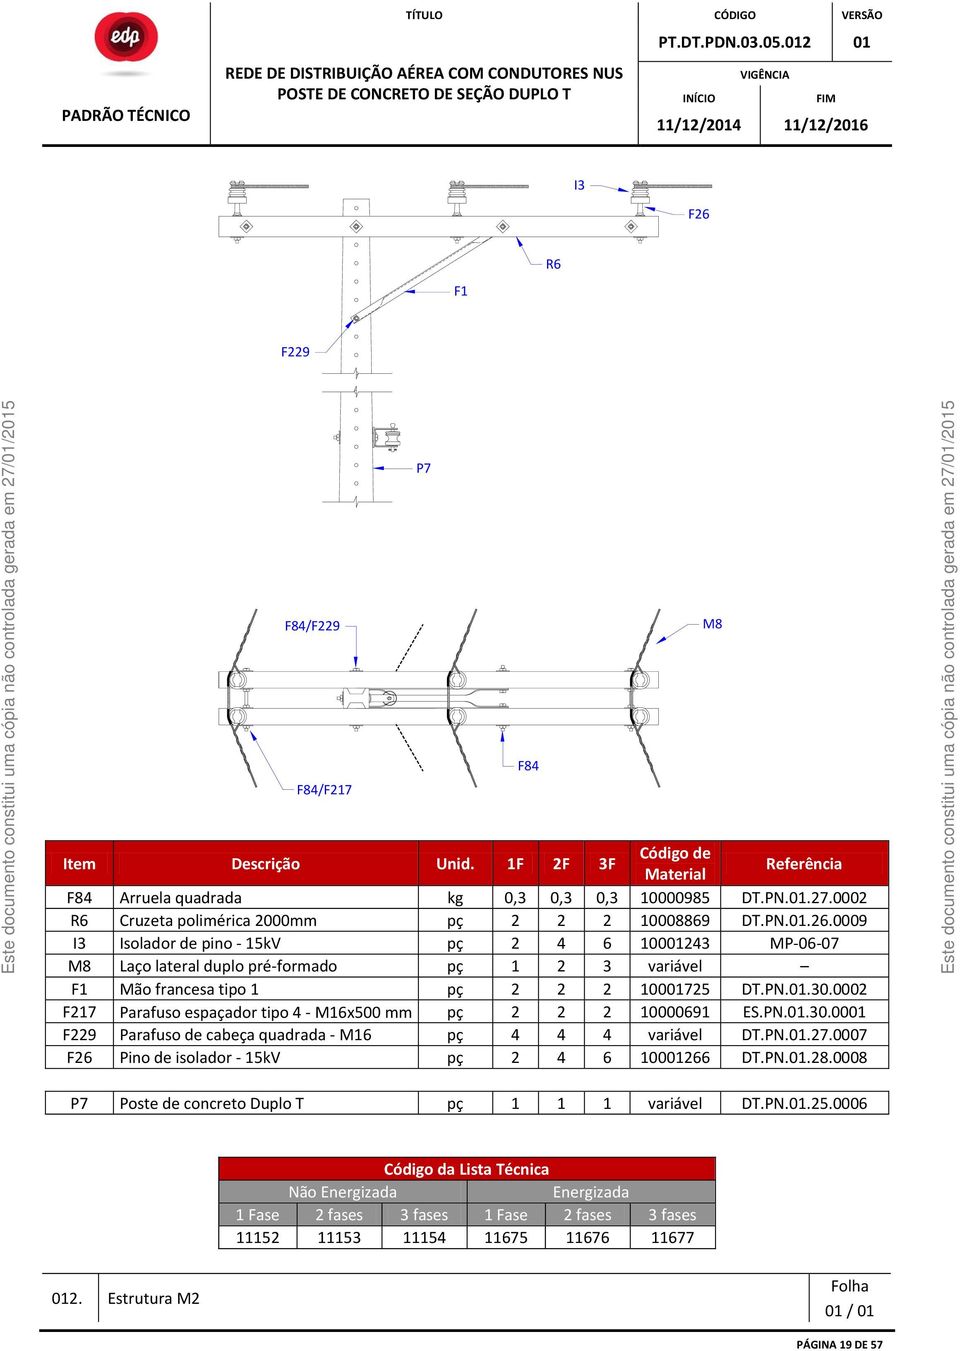 0009 I3 Isolador de pino - 15kV pç 2 4 6 10001243 MP-06-07 M8 Laço lateral duplo pré-formado pç 1 2 3 variável F1 Mão francesa tipo 1 pç 2 2 2 10001725 DT.PN.01.30.